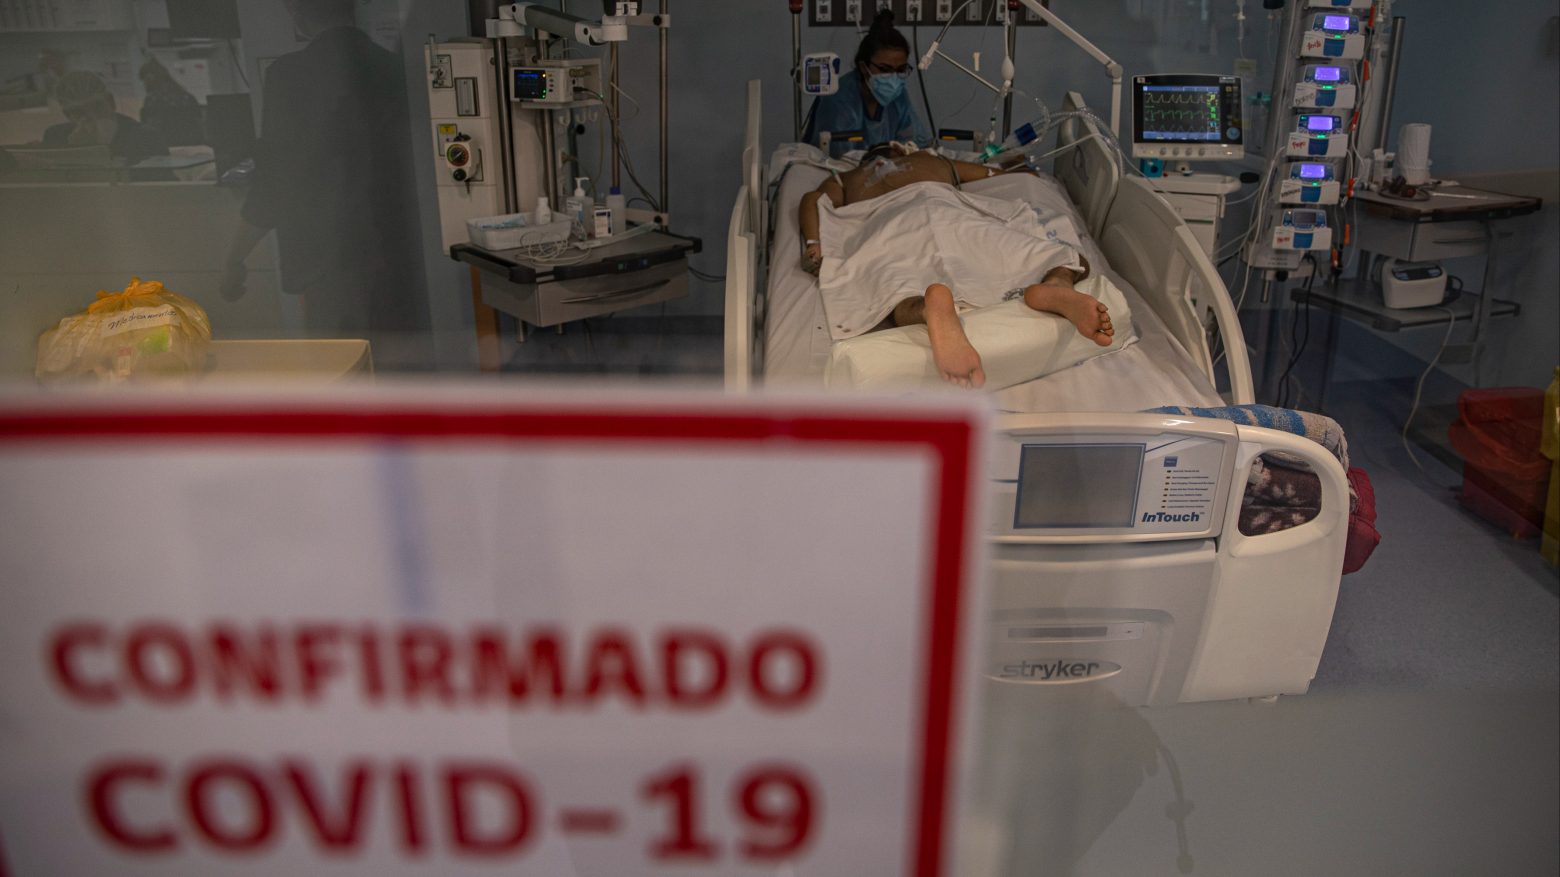 Συναγερμός στη Χιλή: Εφτασε από τις ΗΠΑ η παραλλαγή Δέλτα - Σε απομόνωση η ασθενής